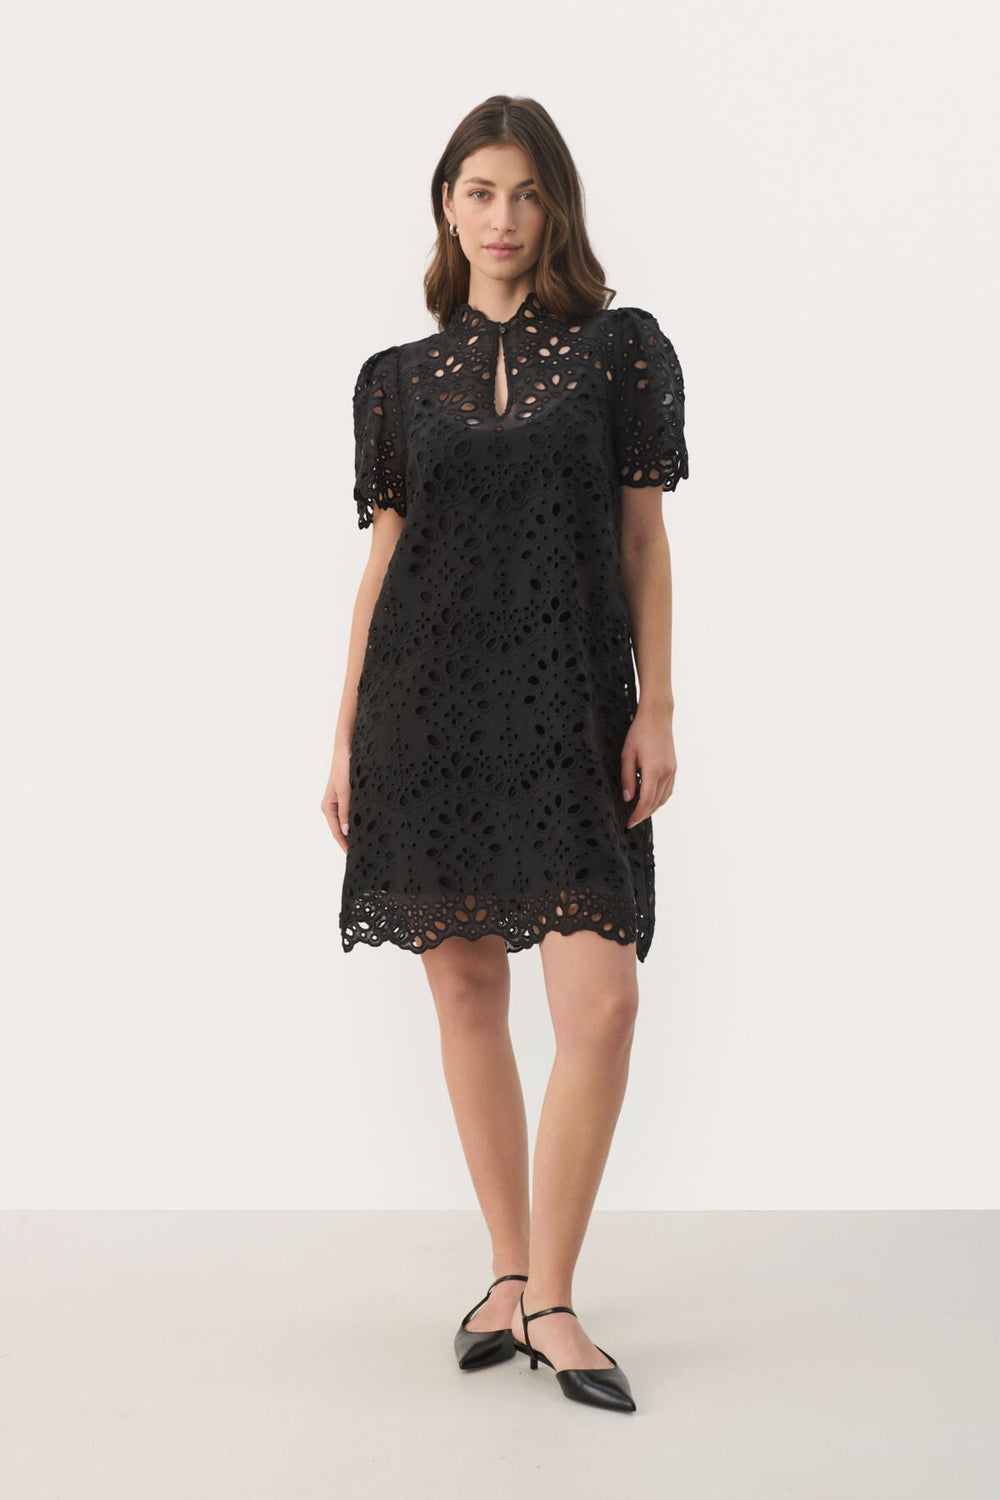 Gebellapw Dress Black | Kjoler | Smuk - Dameklær på nett